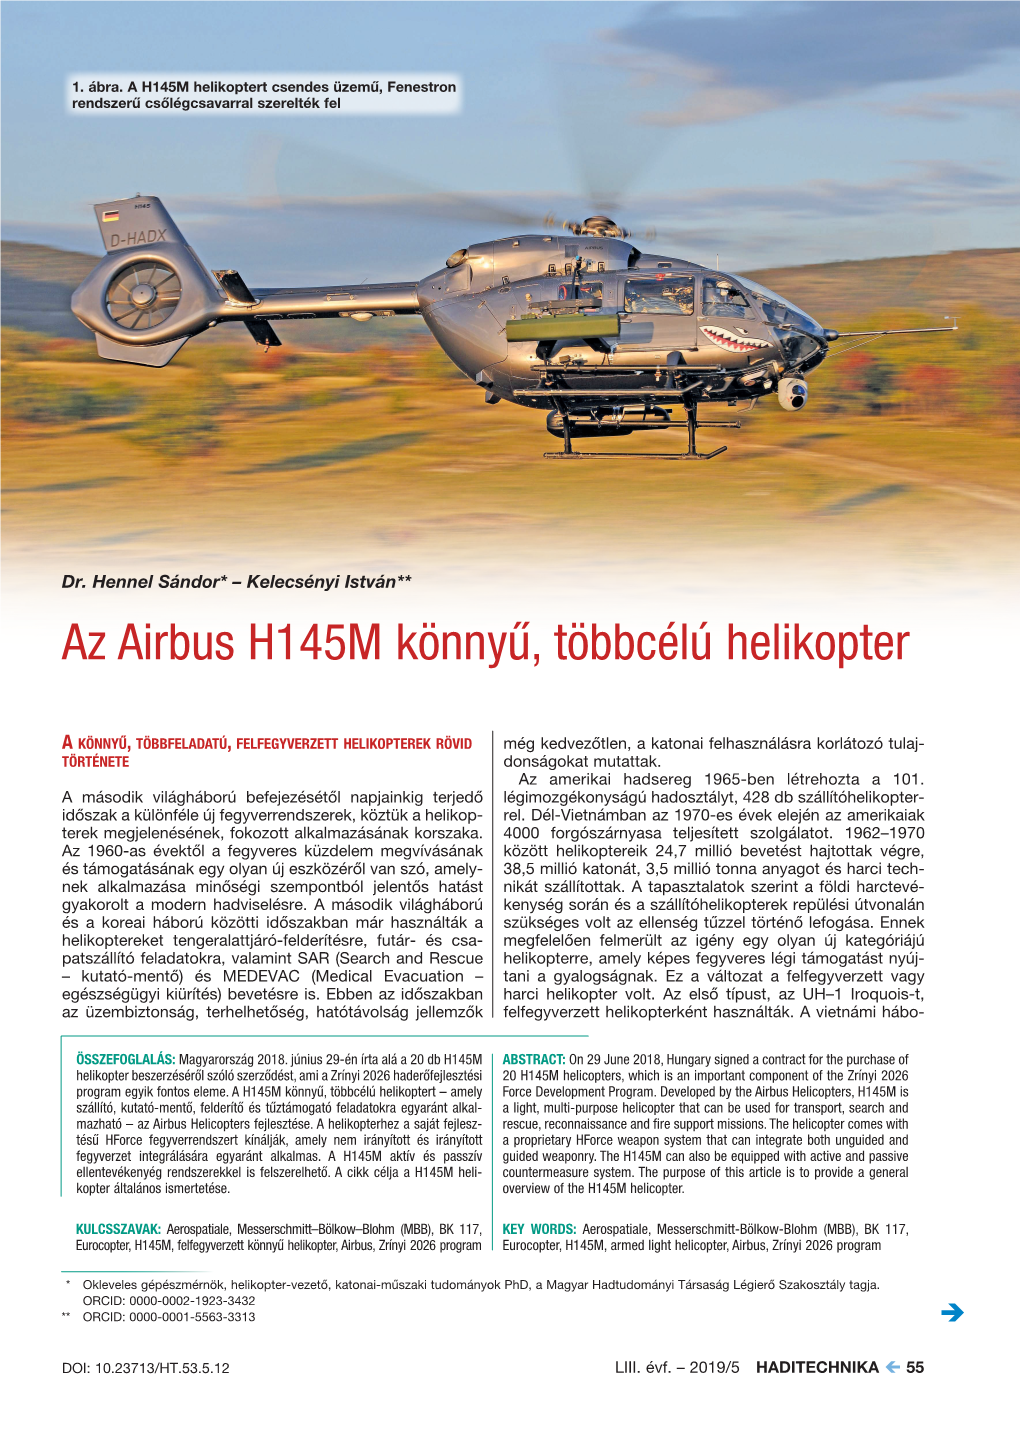 Az Airbus H145M Könnyű, Többcélú Helikopter